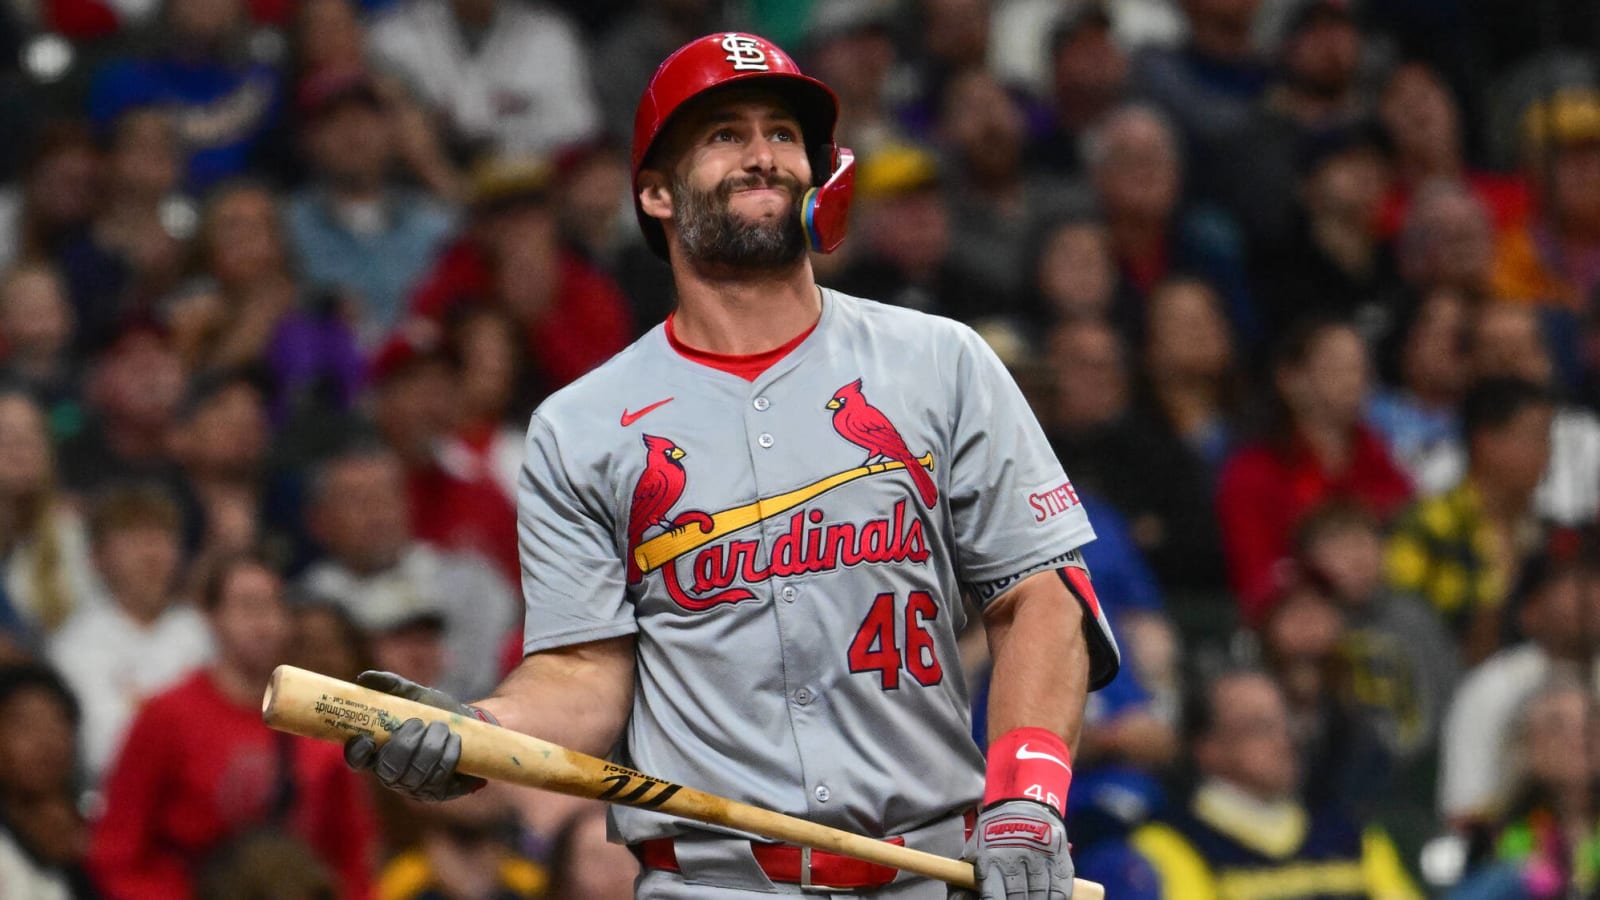 Cardinals’ Paul Goldschmidt Opens Up About Current Slump